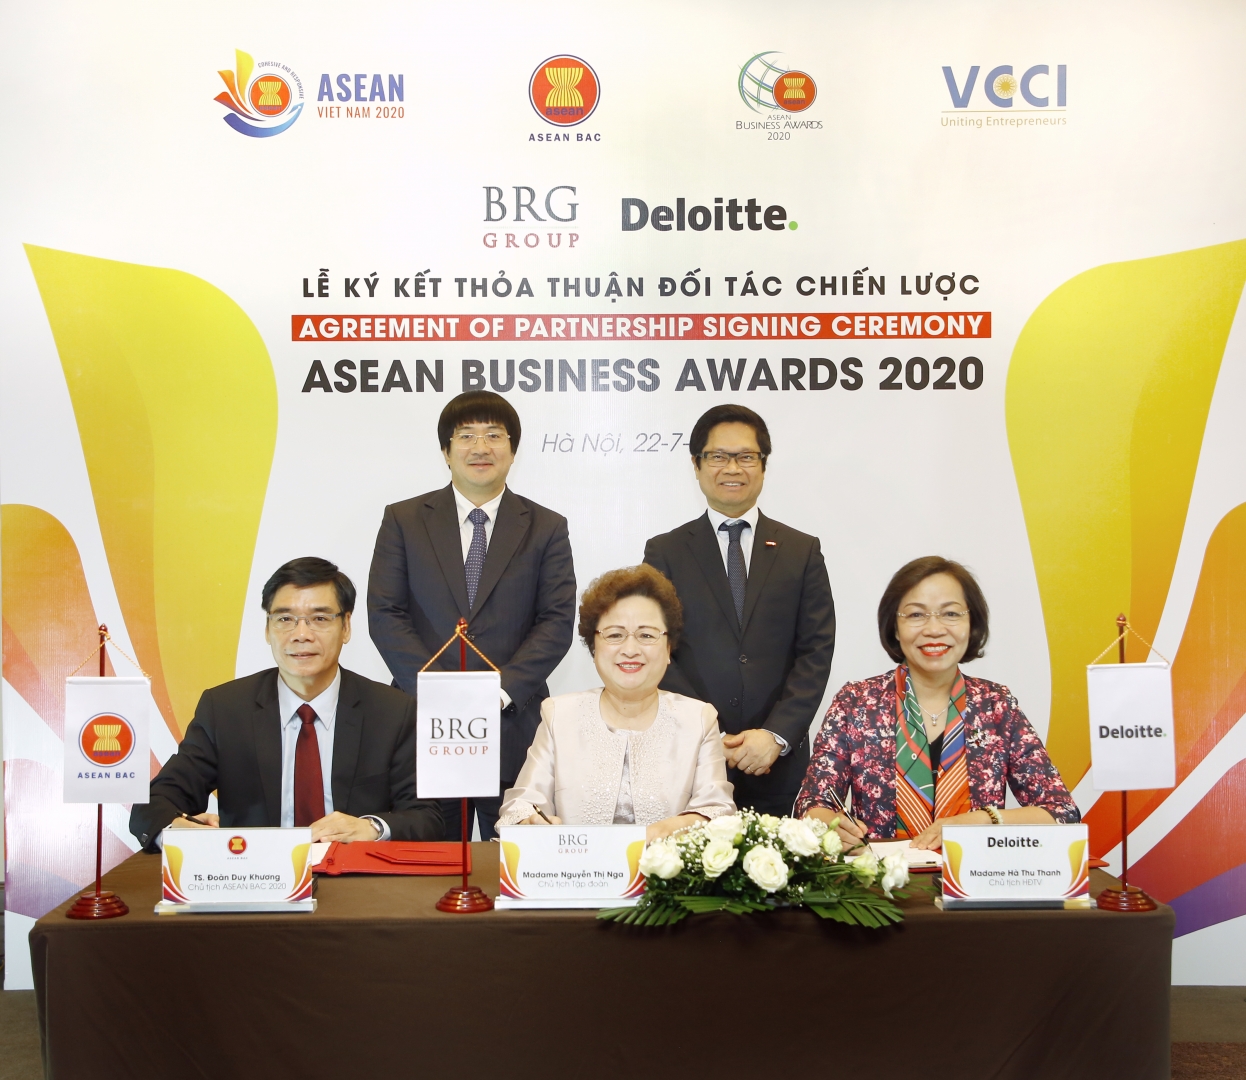 Ông Đoàn Duy Khương, Chủ tịch ASEAN BAC 2020, Madame Nguyễn Thị Nga, Chủ tịch Giải thưởng ABA 2020 (ngồi giữa), và Madame Hà Thị Thu Thanh, Chủ tịch HĐTV Deloitte Việt Nam ký thỏa thuận đối tác chiến lược cho Giải thưởng ABA 2020